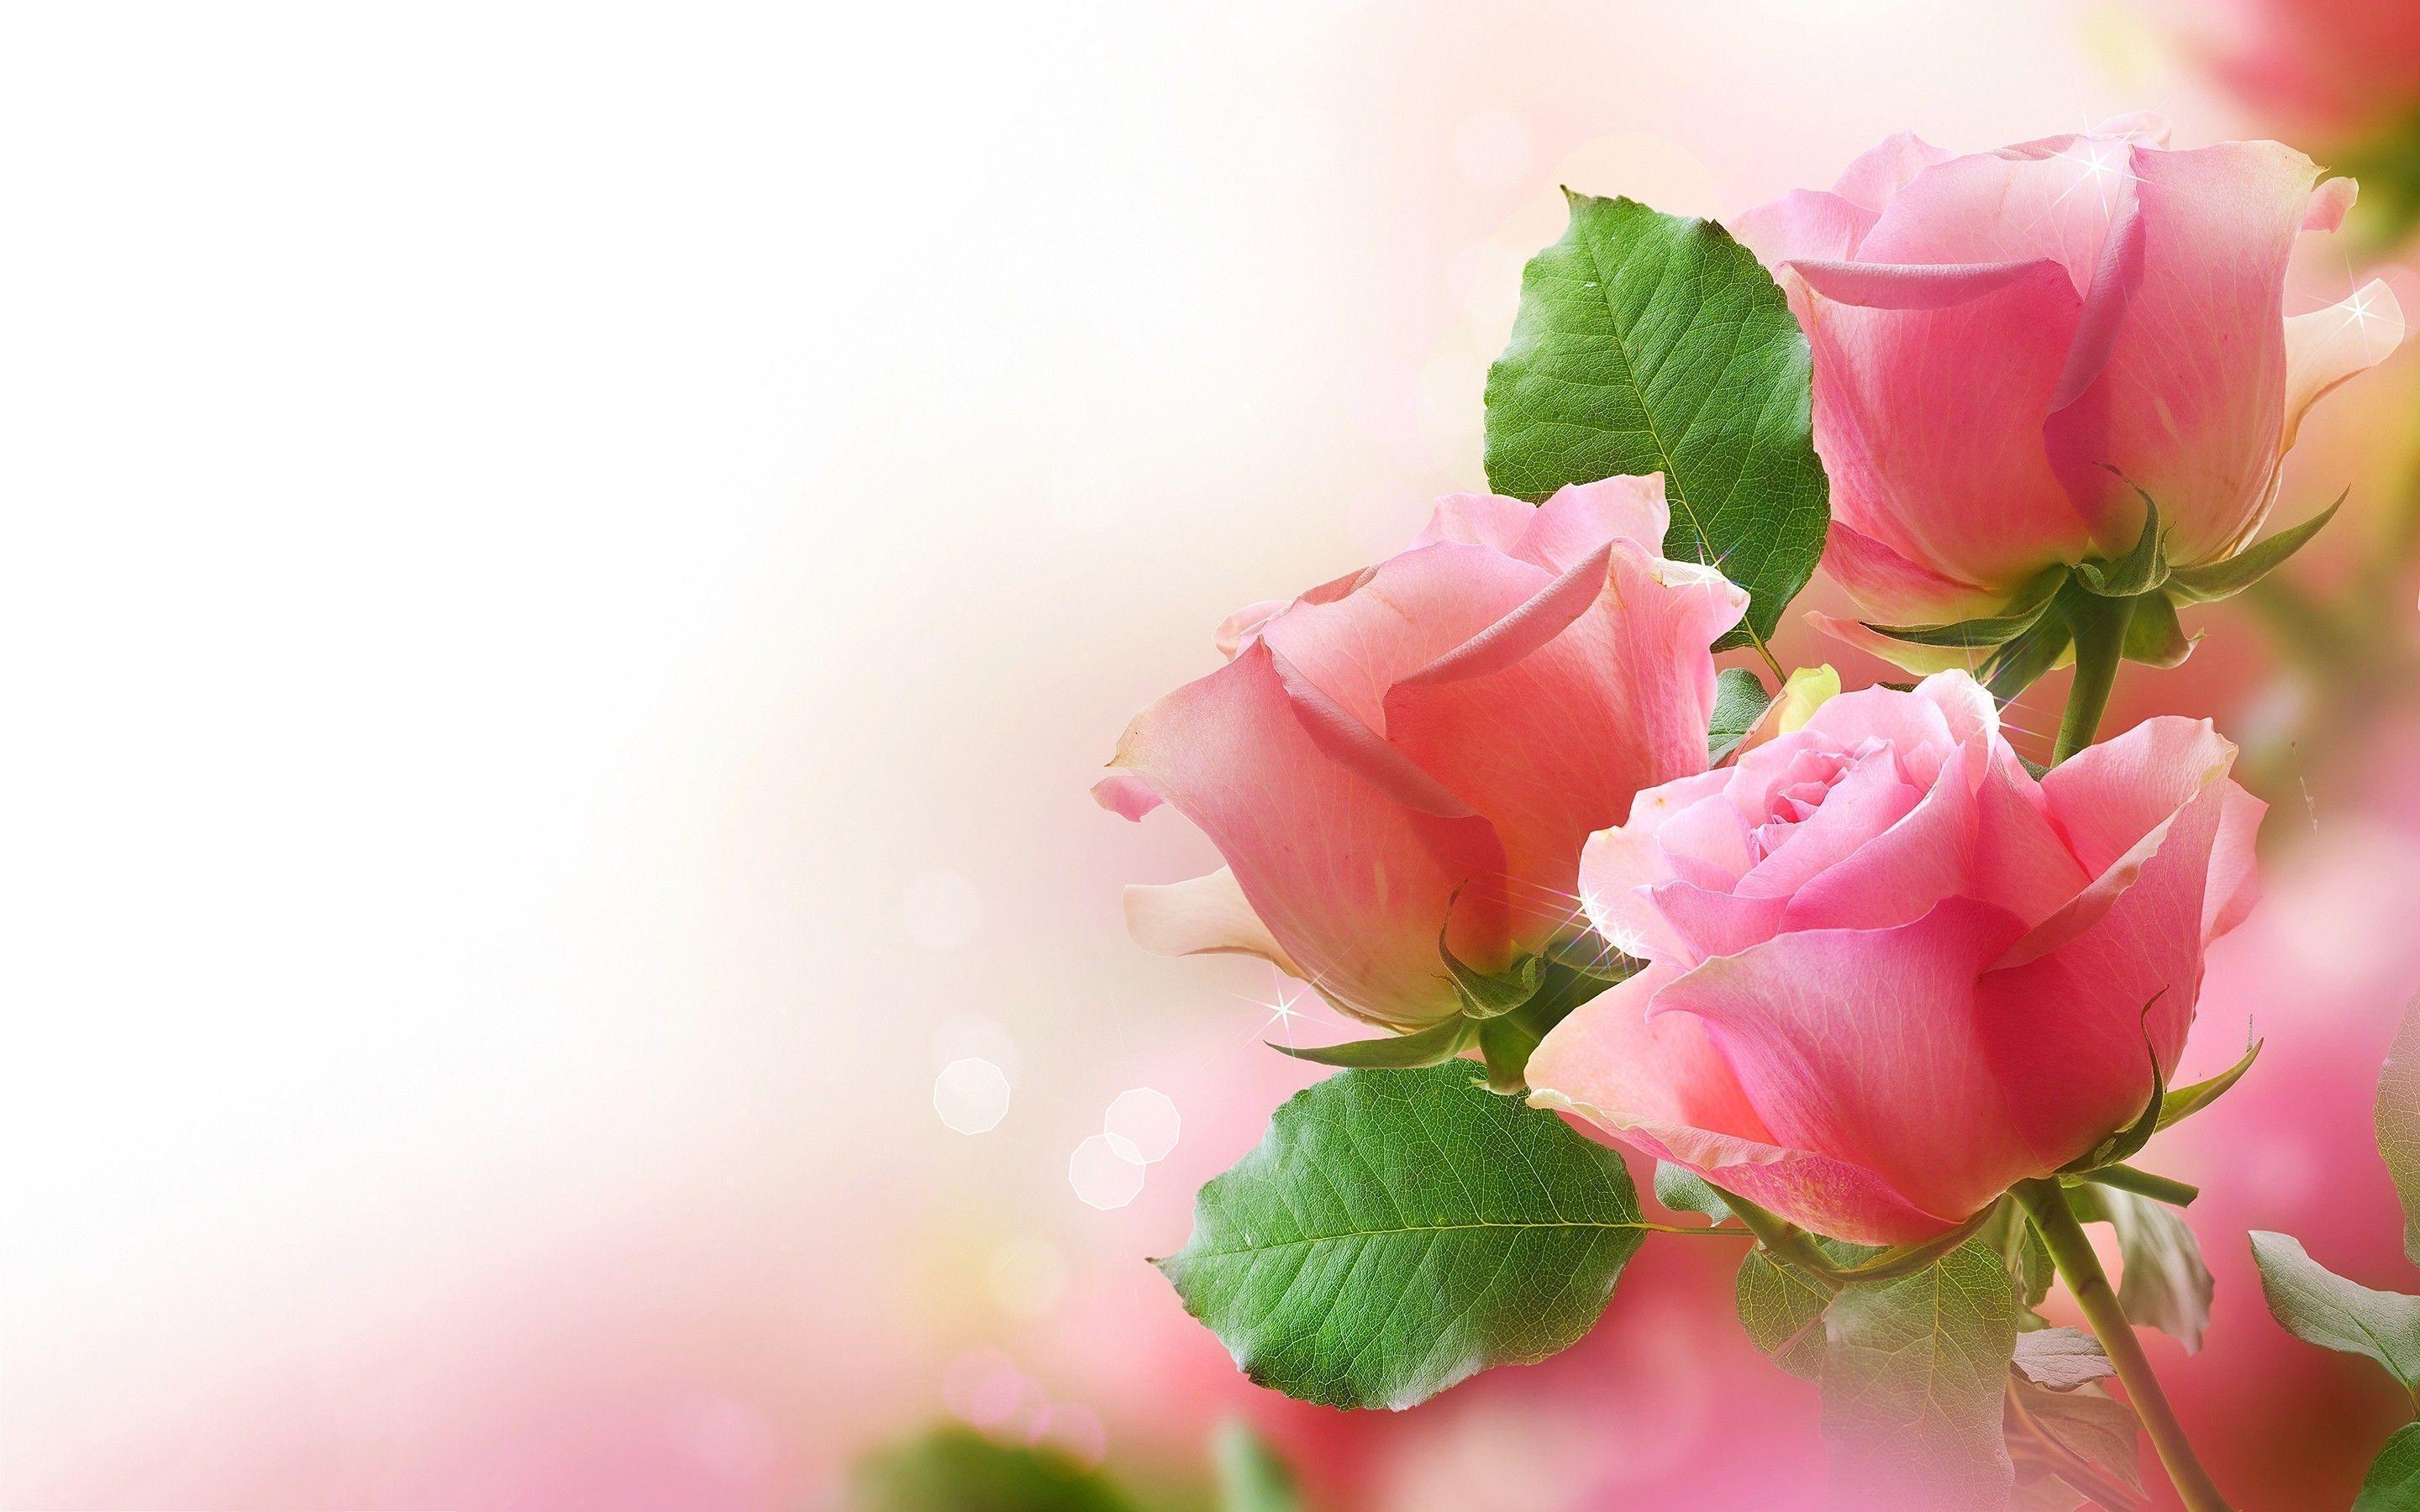 Rose Wallpaper for Desktop background picture